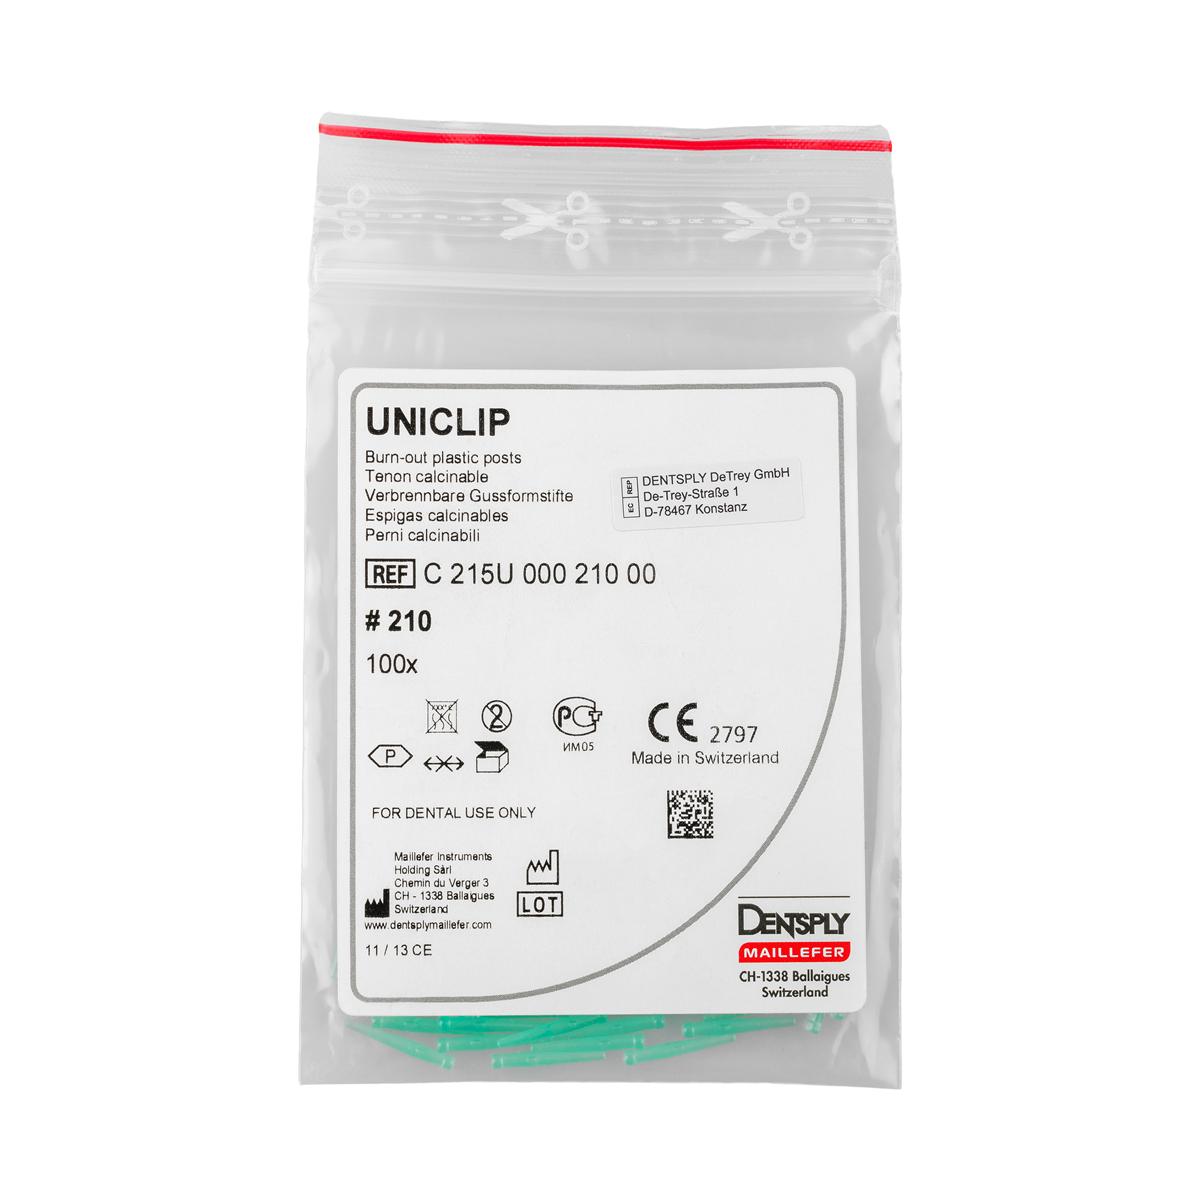 Uniclip Burnout Plastic Post Size 210 100pk